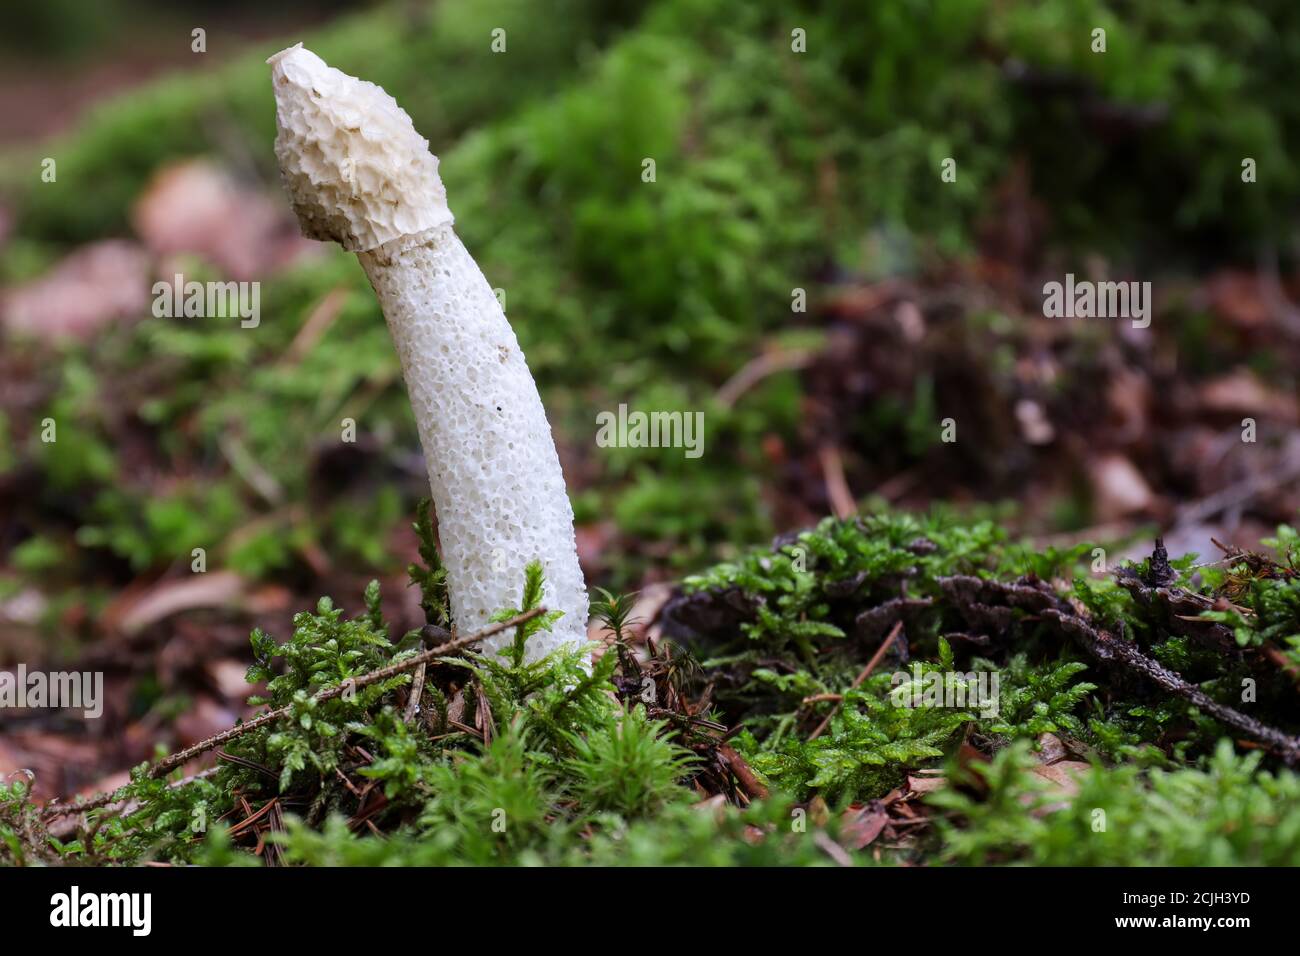 Phallus Impudicus - stinkhorn comune - il fungo non è velenoso, ma si consumano solo funghi molto freschi Foto Stock